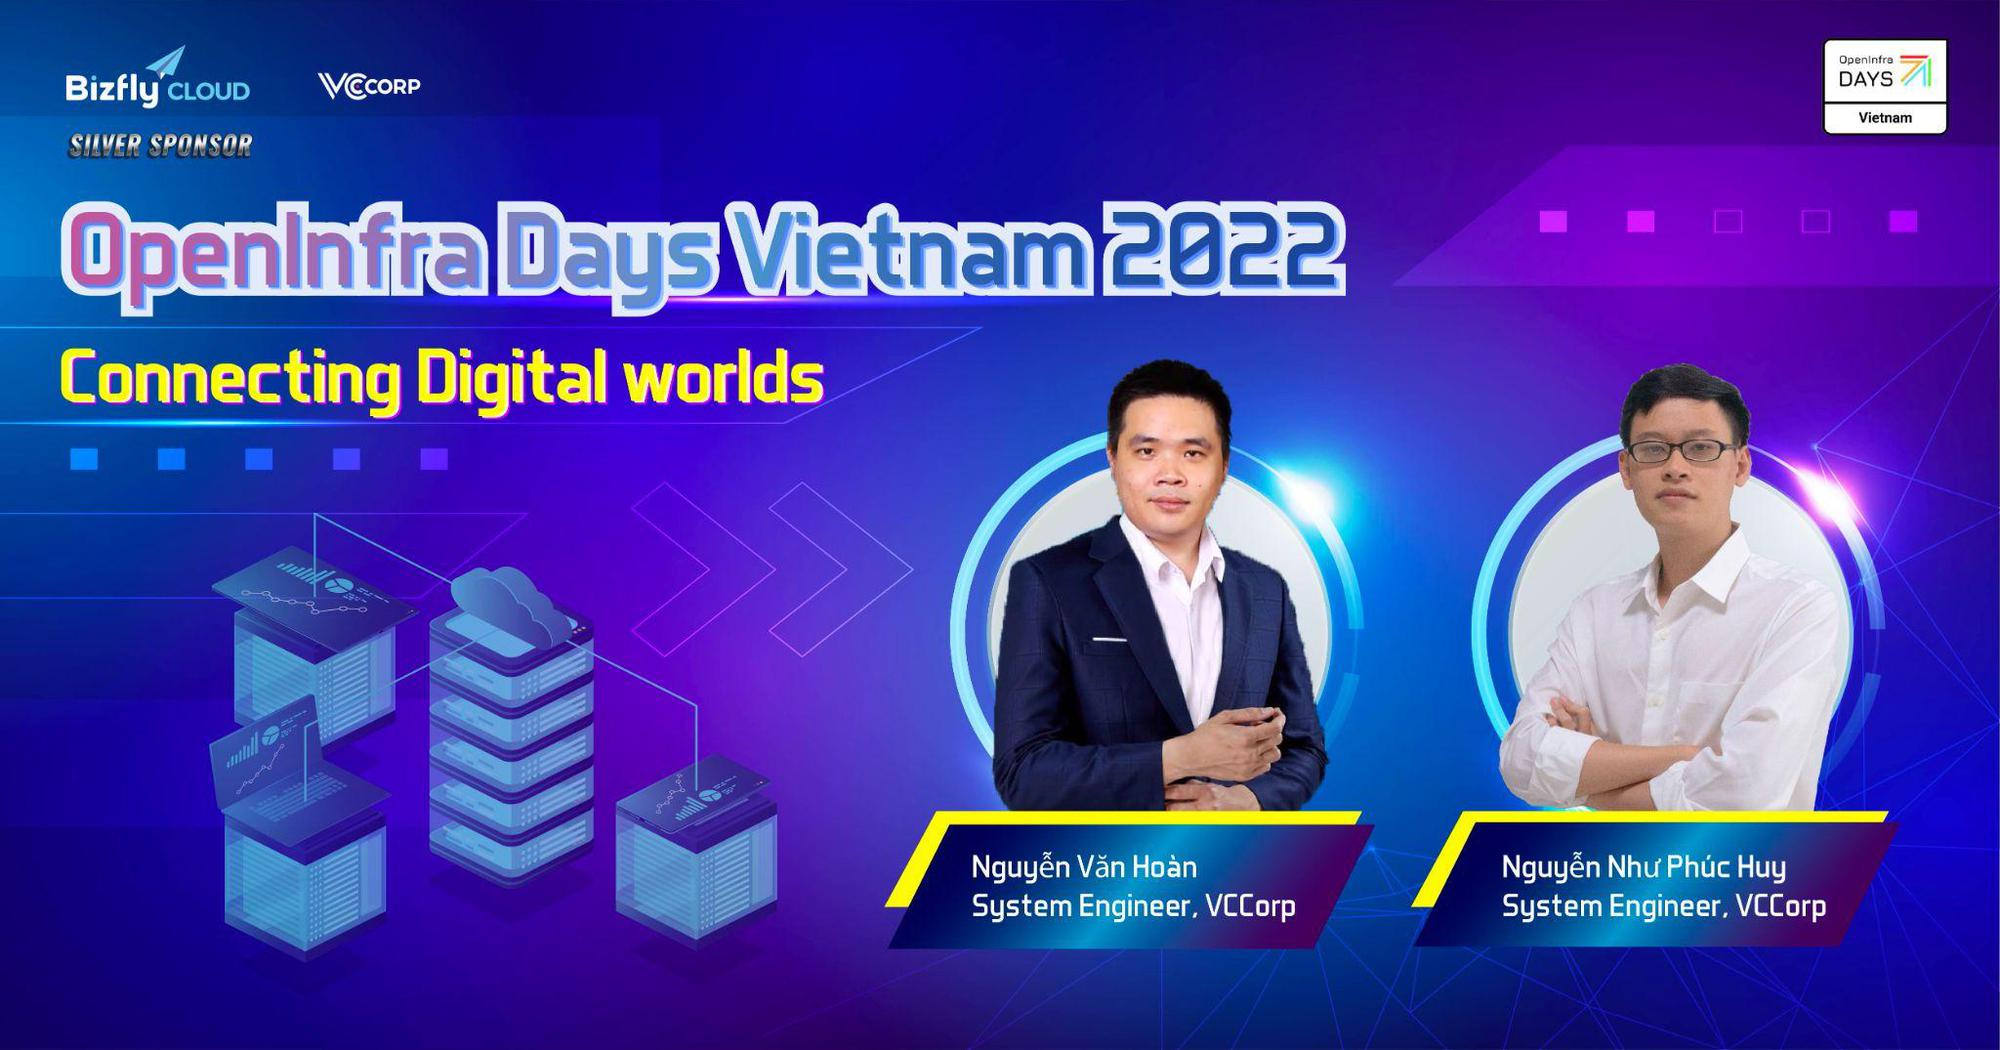 Bizfly Cloud đồng hành cùng OpenInfra Days Vietnam lần thứ 2 trong OpenInfra Days Vietnam 2022 - Ảnh 3.